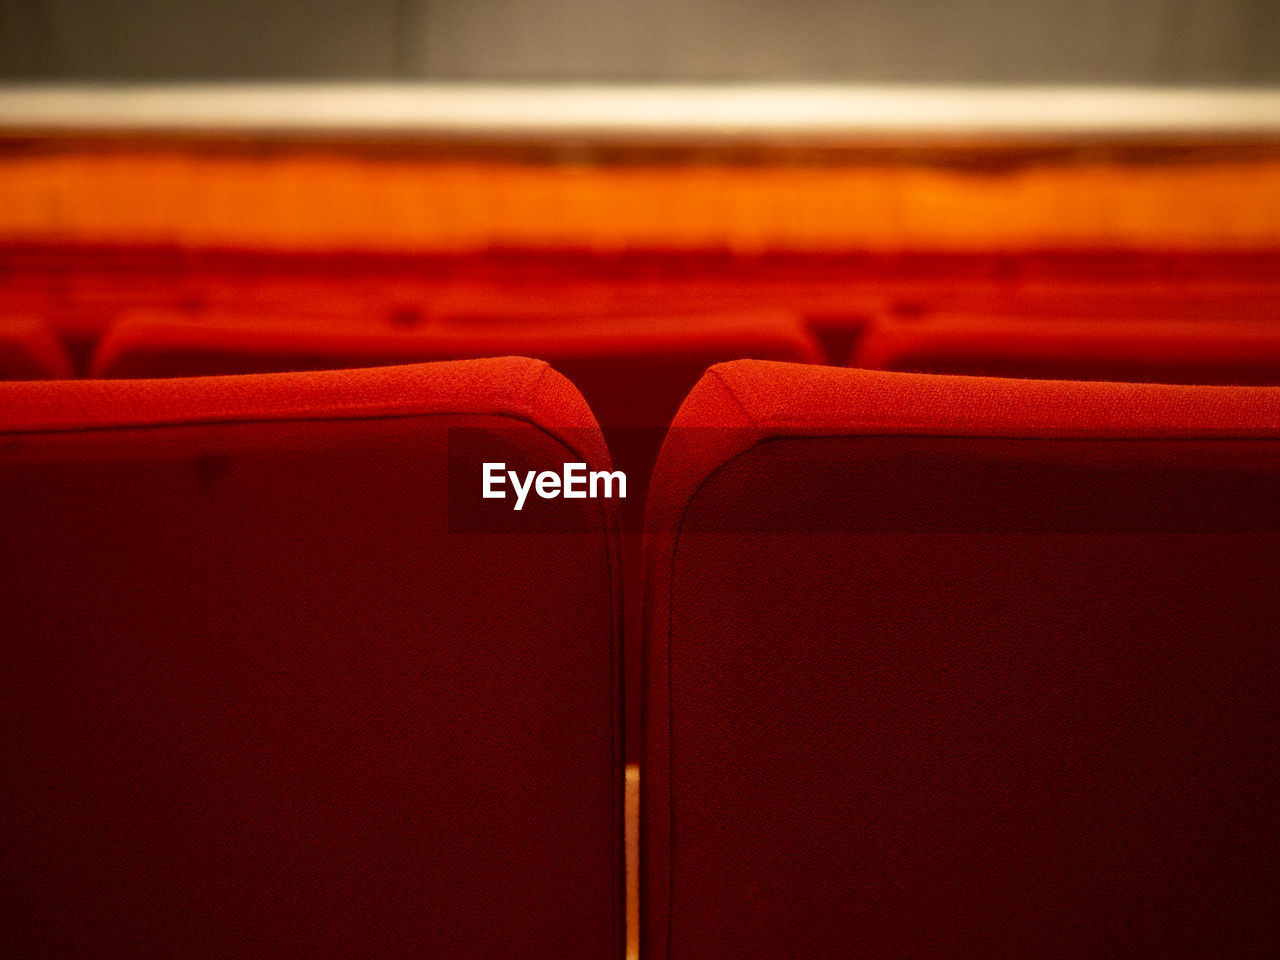 Empty theatre seats